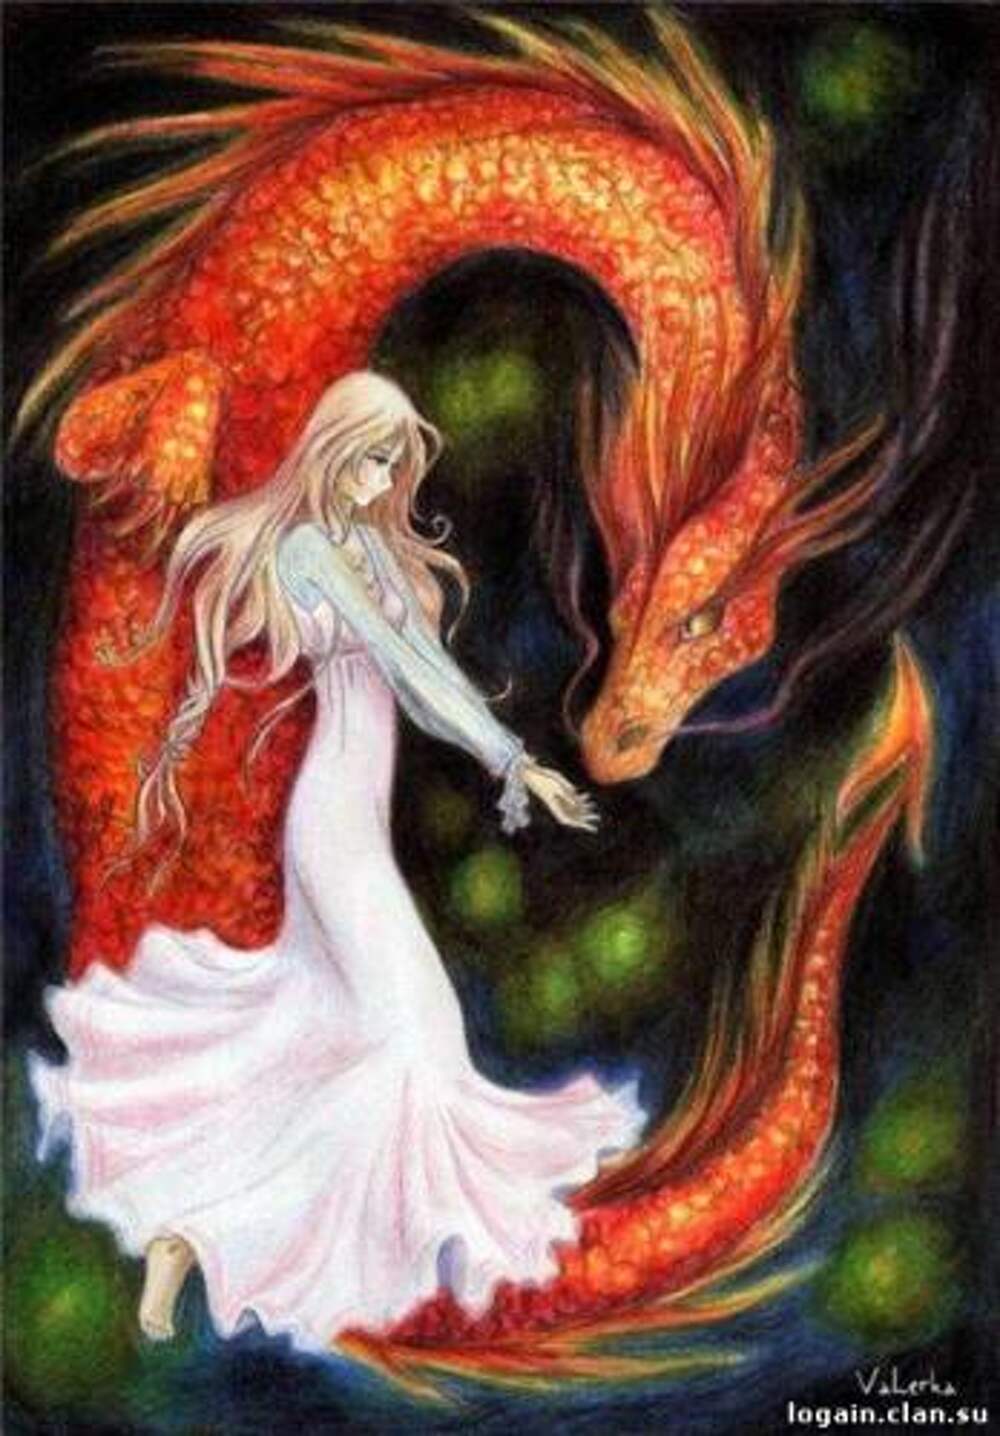 Дракон и девушка любовь